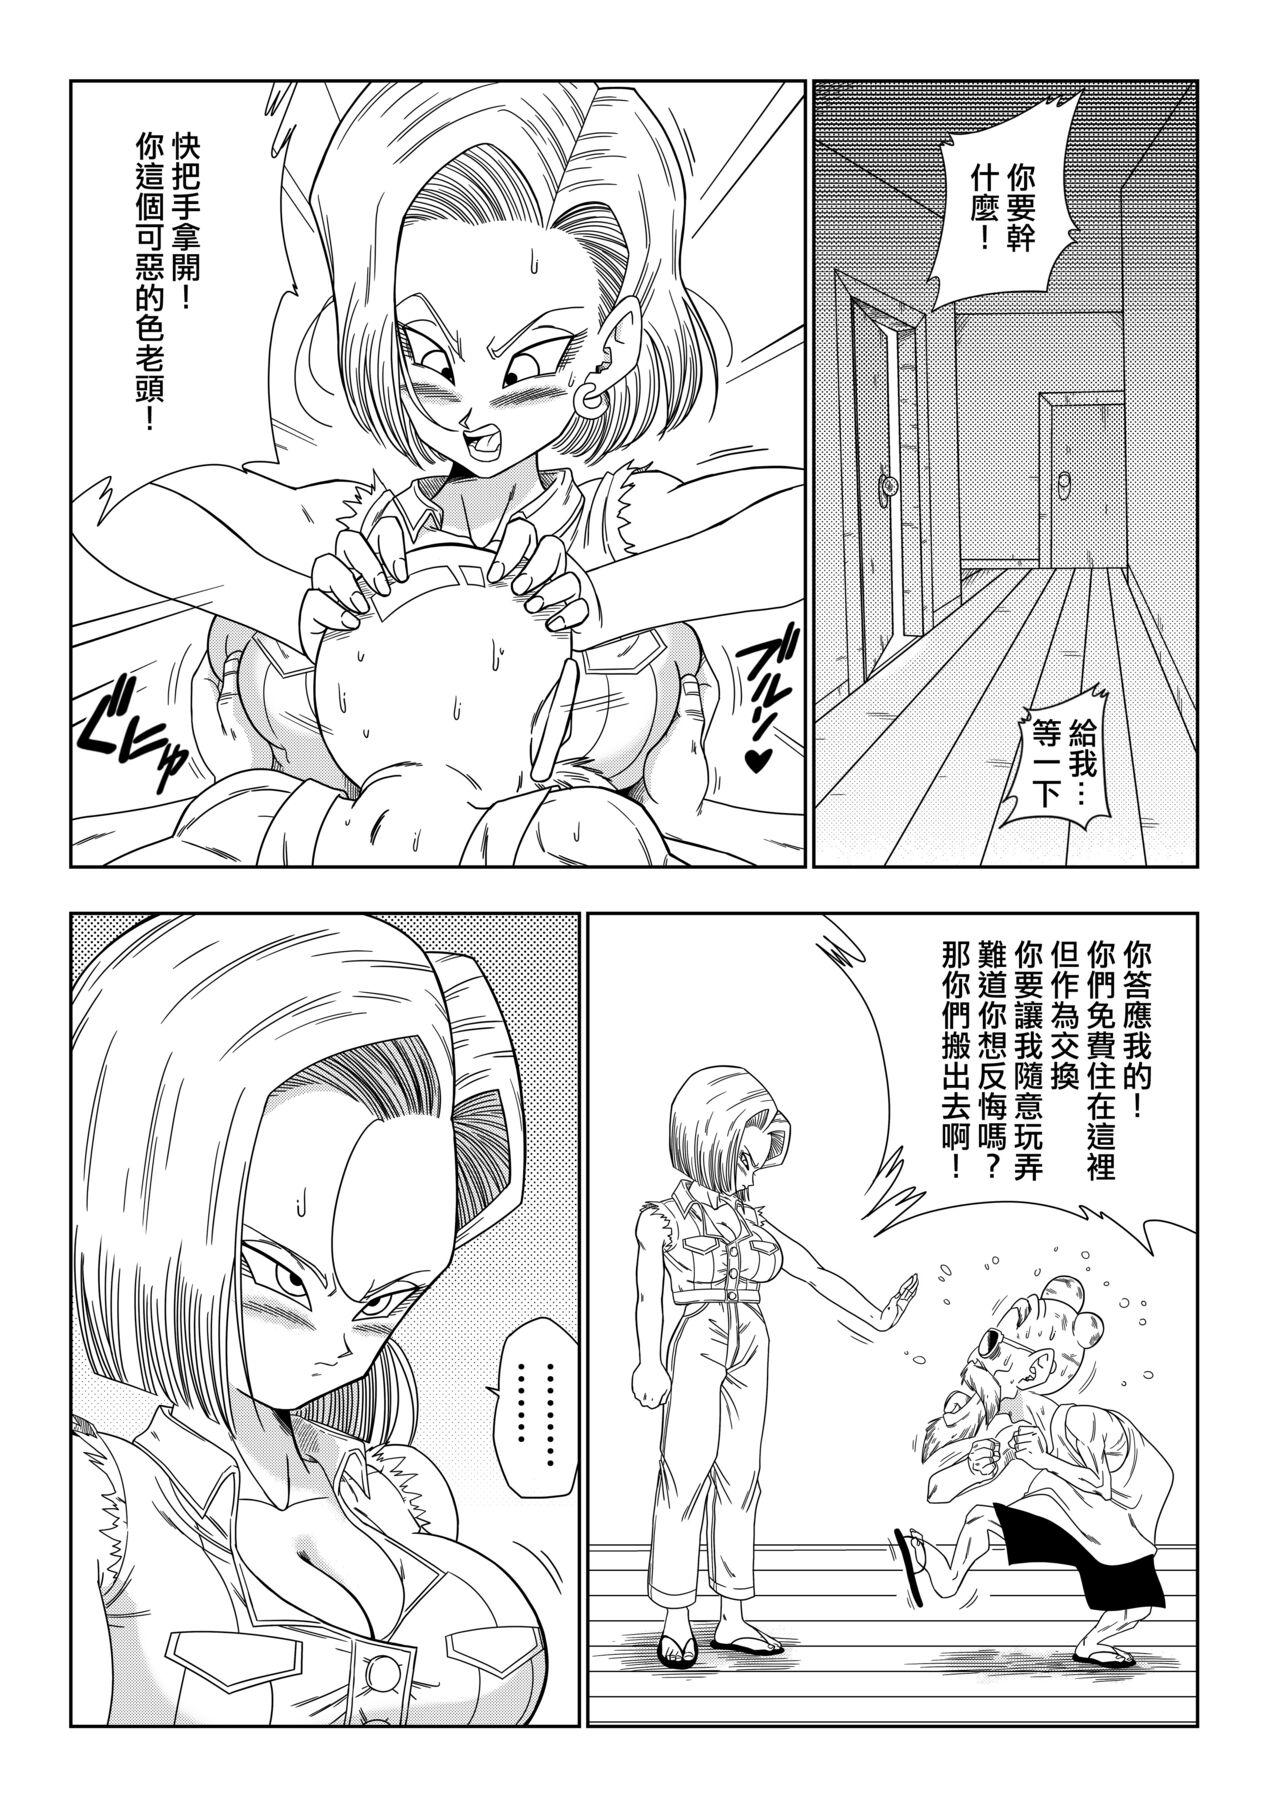 Submissive 18-gou vs Kame Sennin - Dragon ball z Toilet - Page 5